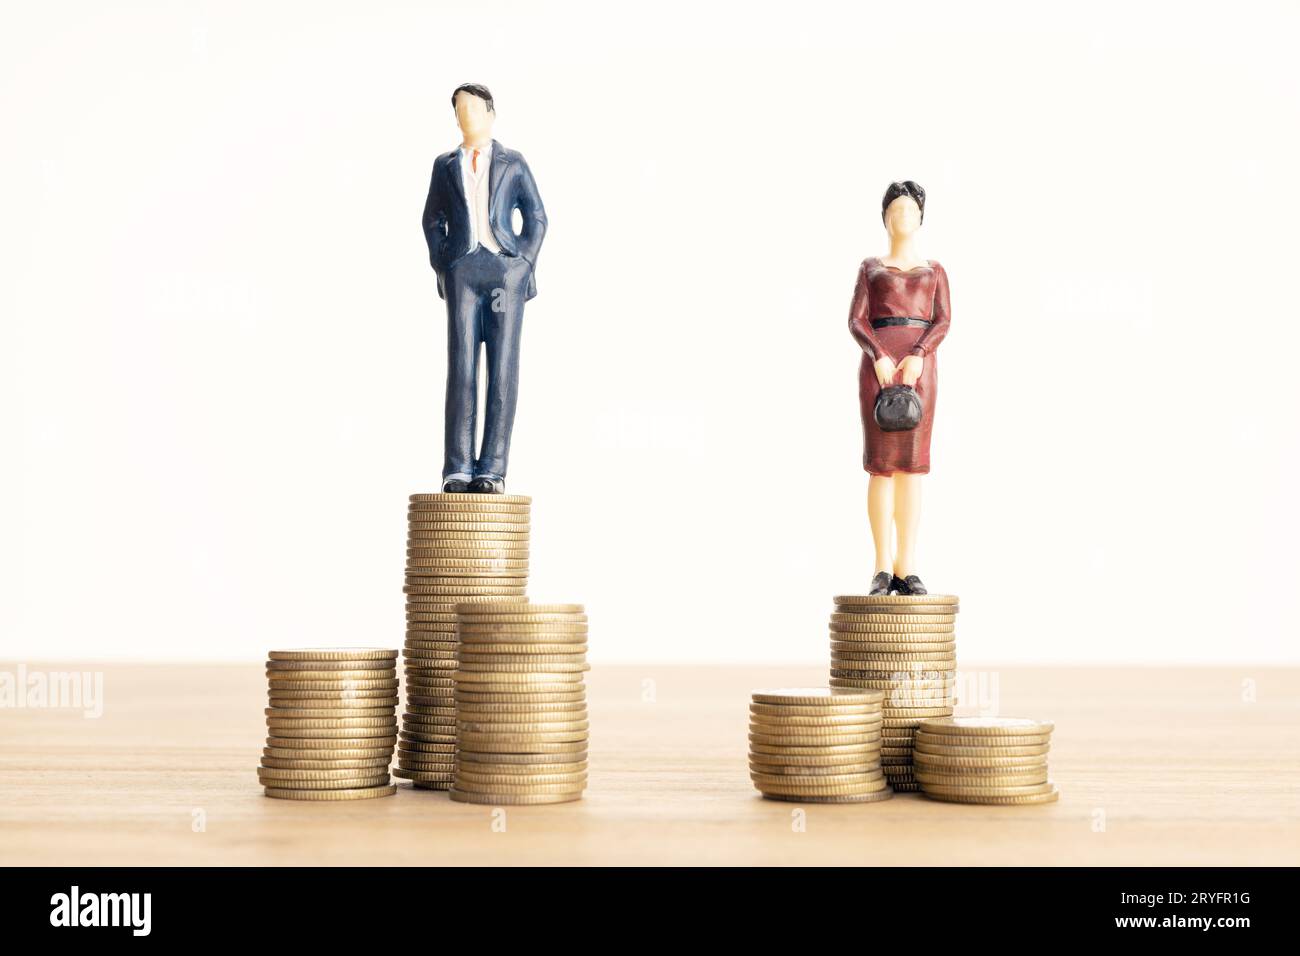 Notion : différence de salaire entre hommes et femmes. Homme et femme debout sur la pile de pièces de monnaie Banque D'Images